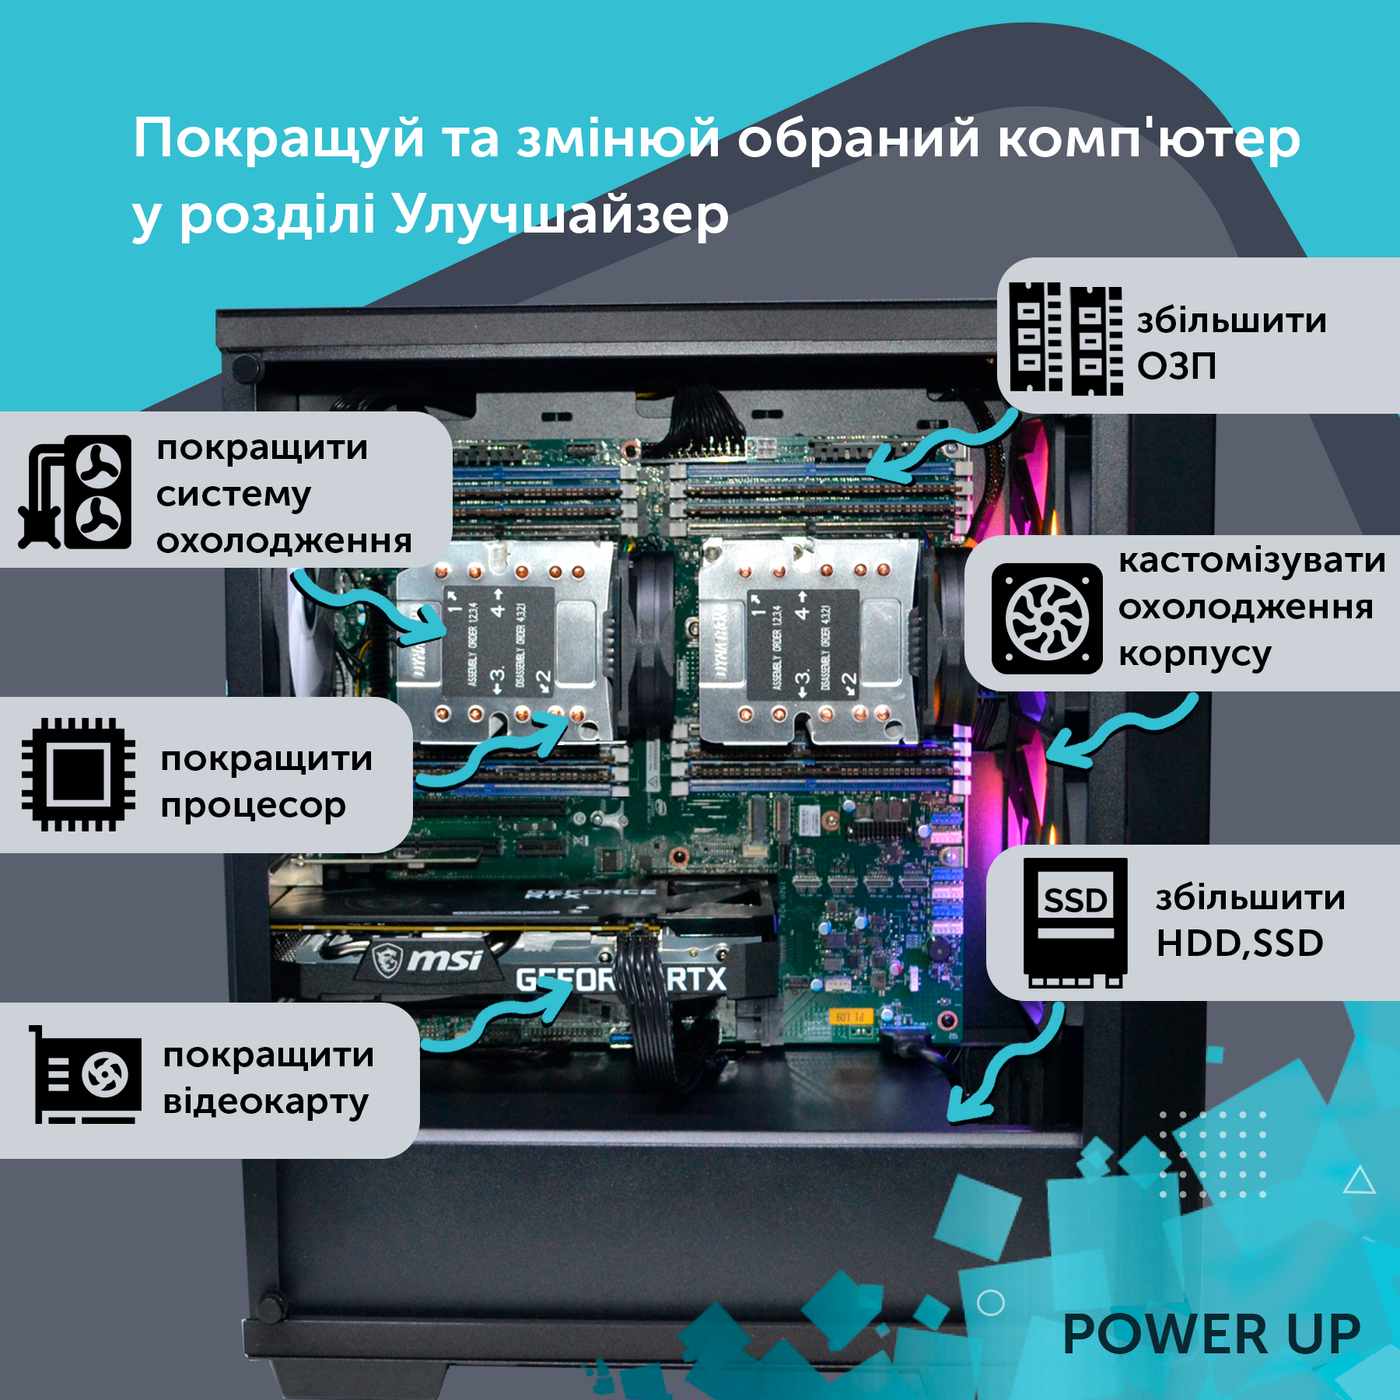 Робоча станція PowerUp Desktop #214 Core i5 13600K/16 GB/SSD 512GB/NVIDIA Quadro M2000 4GB